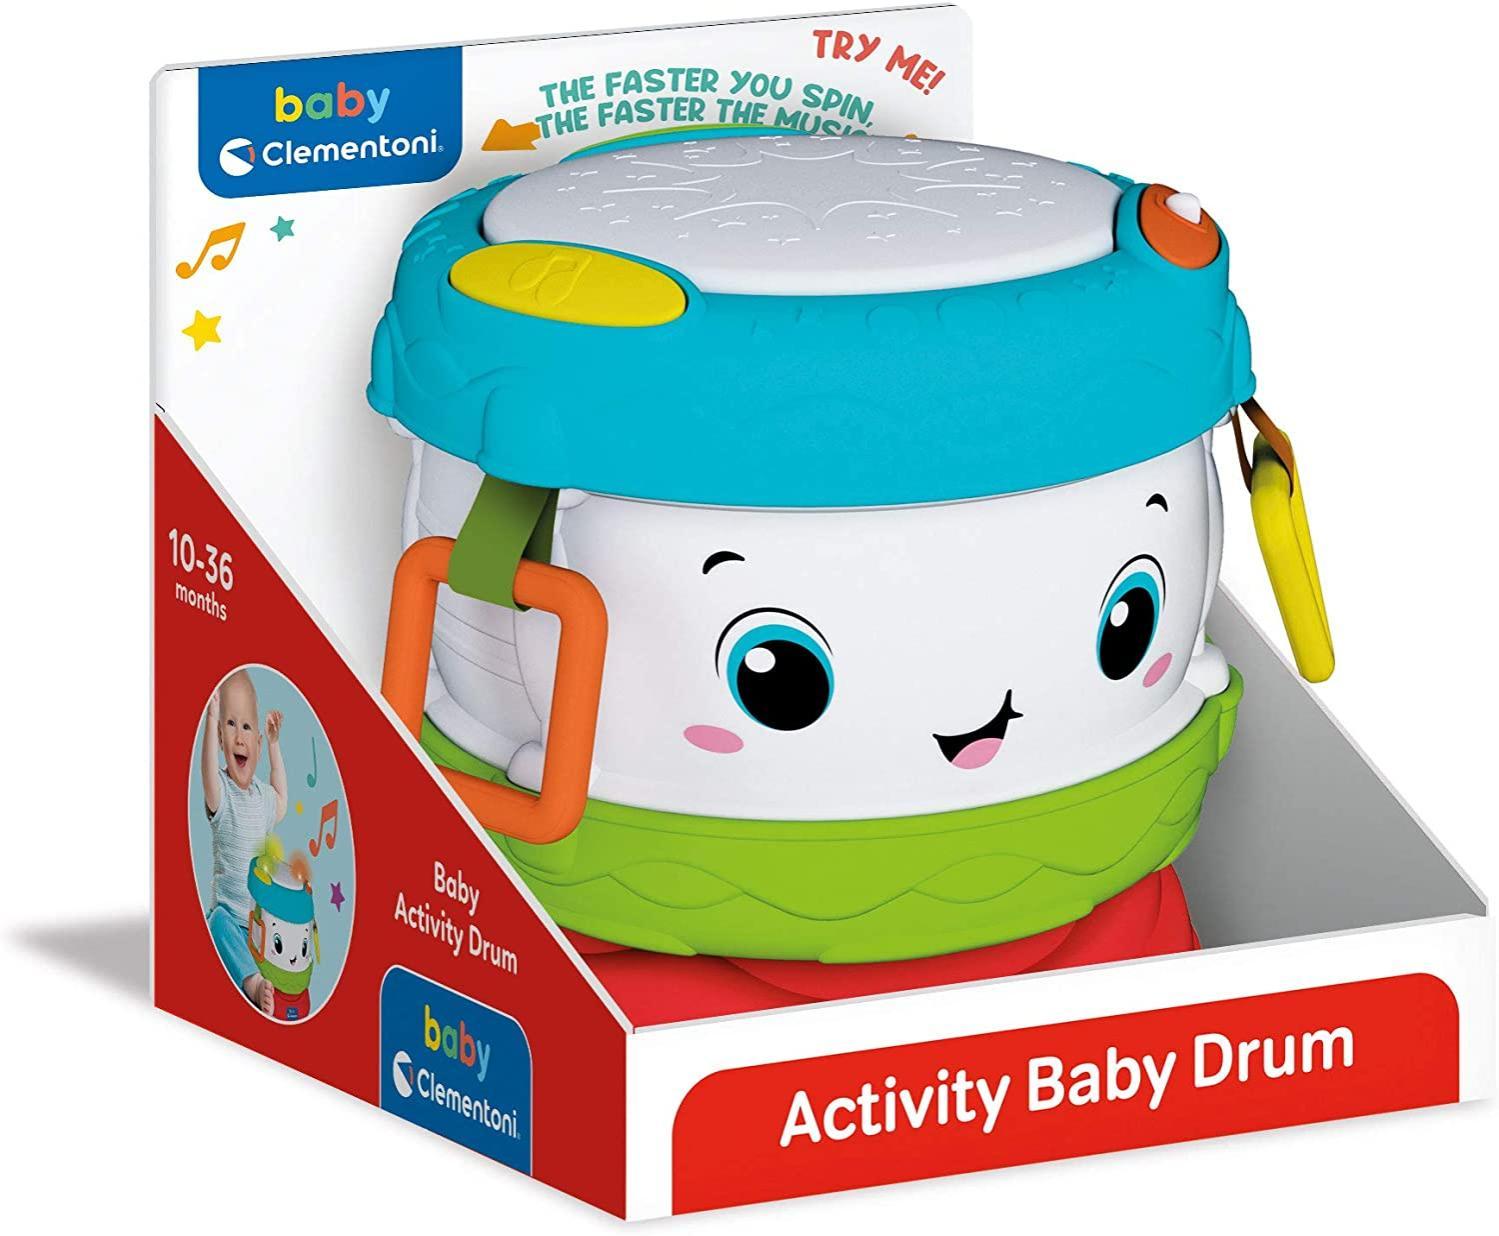 clementoni activity baby drum